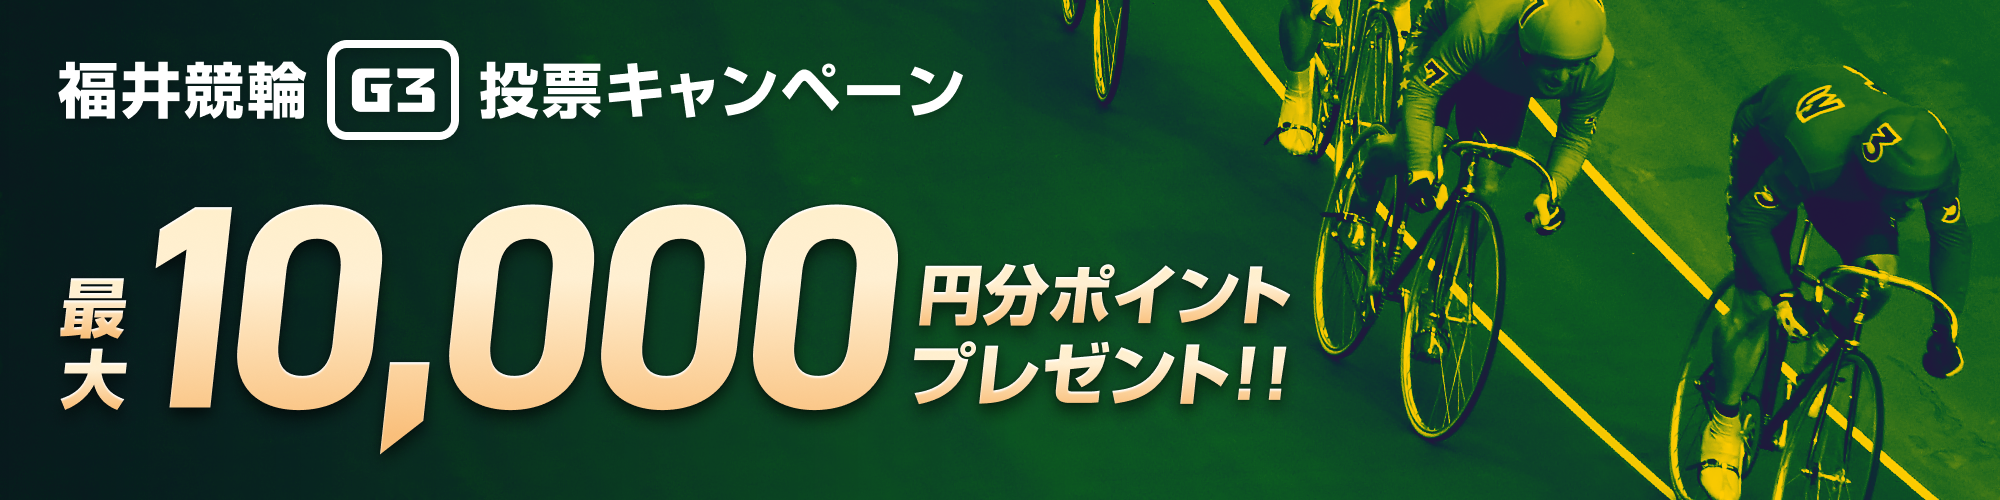 【最大1万円分】福井競輪 開設72周年記念 不死鳥杯（G3）投票キャンペーン